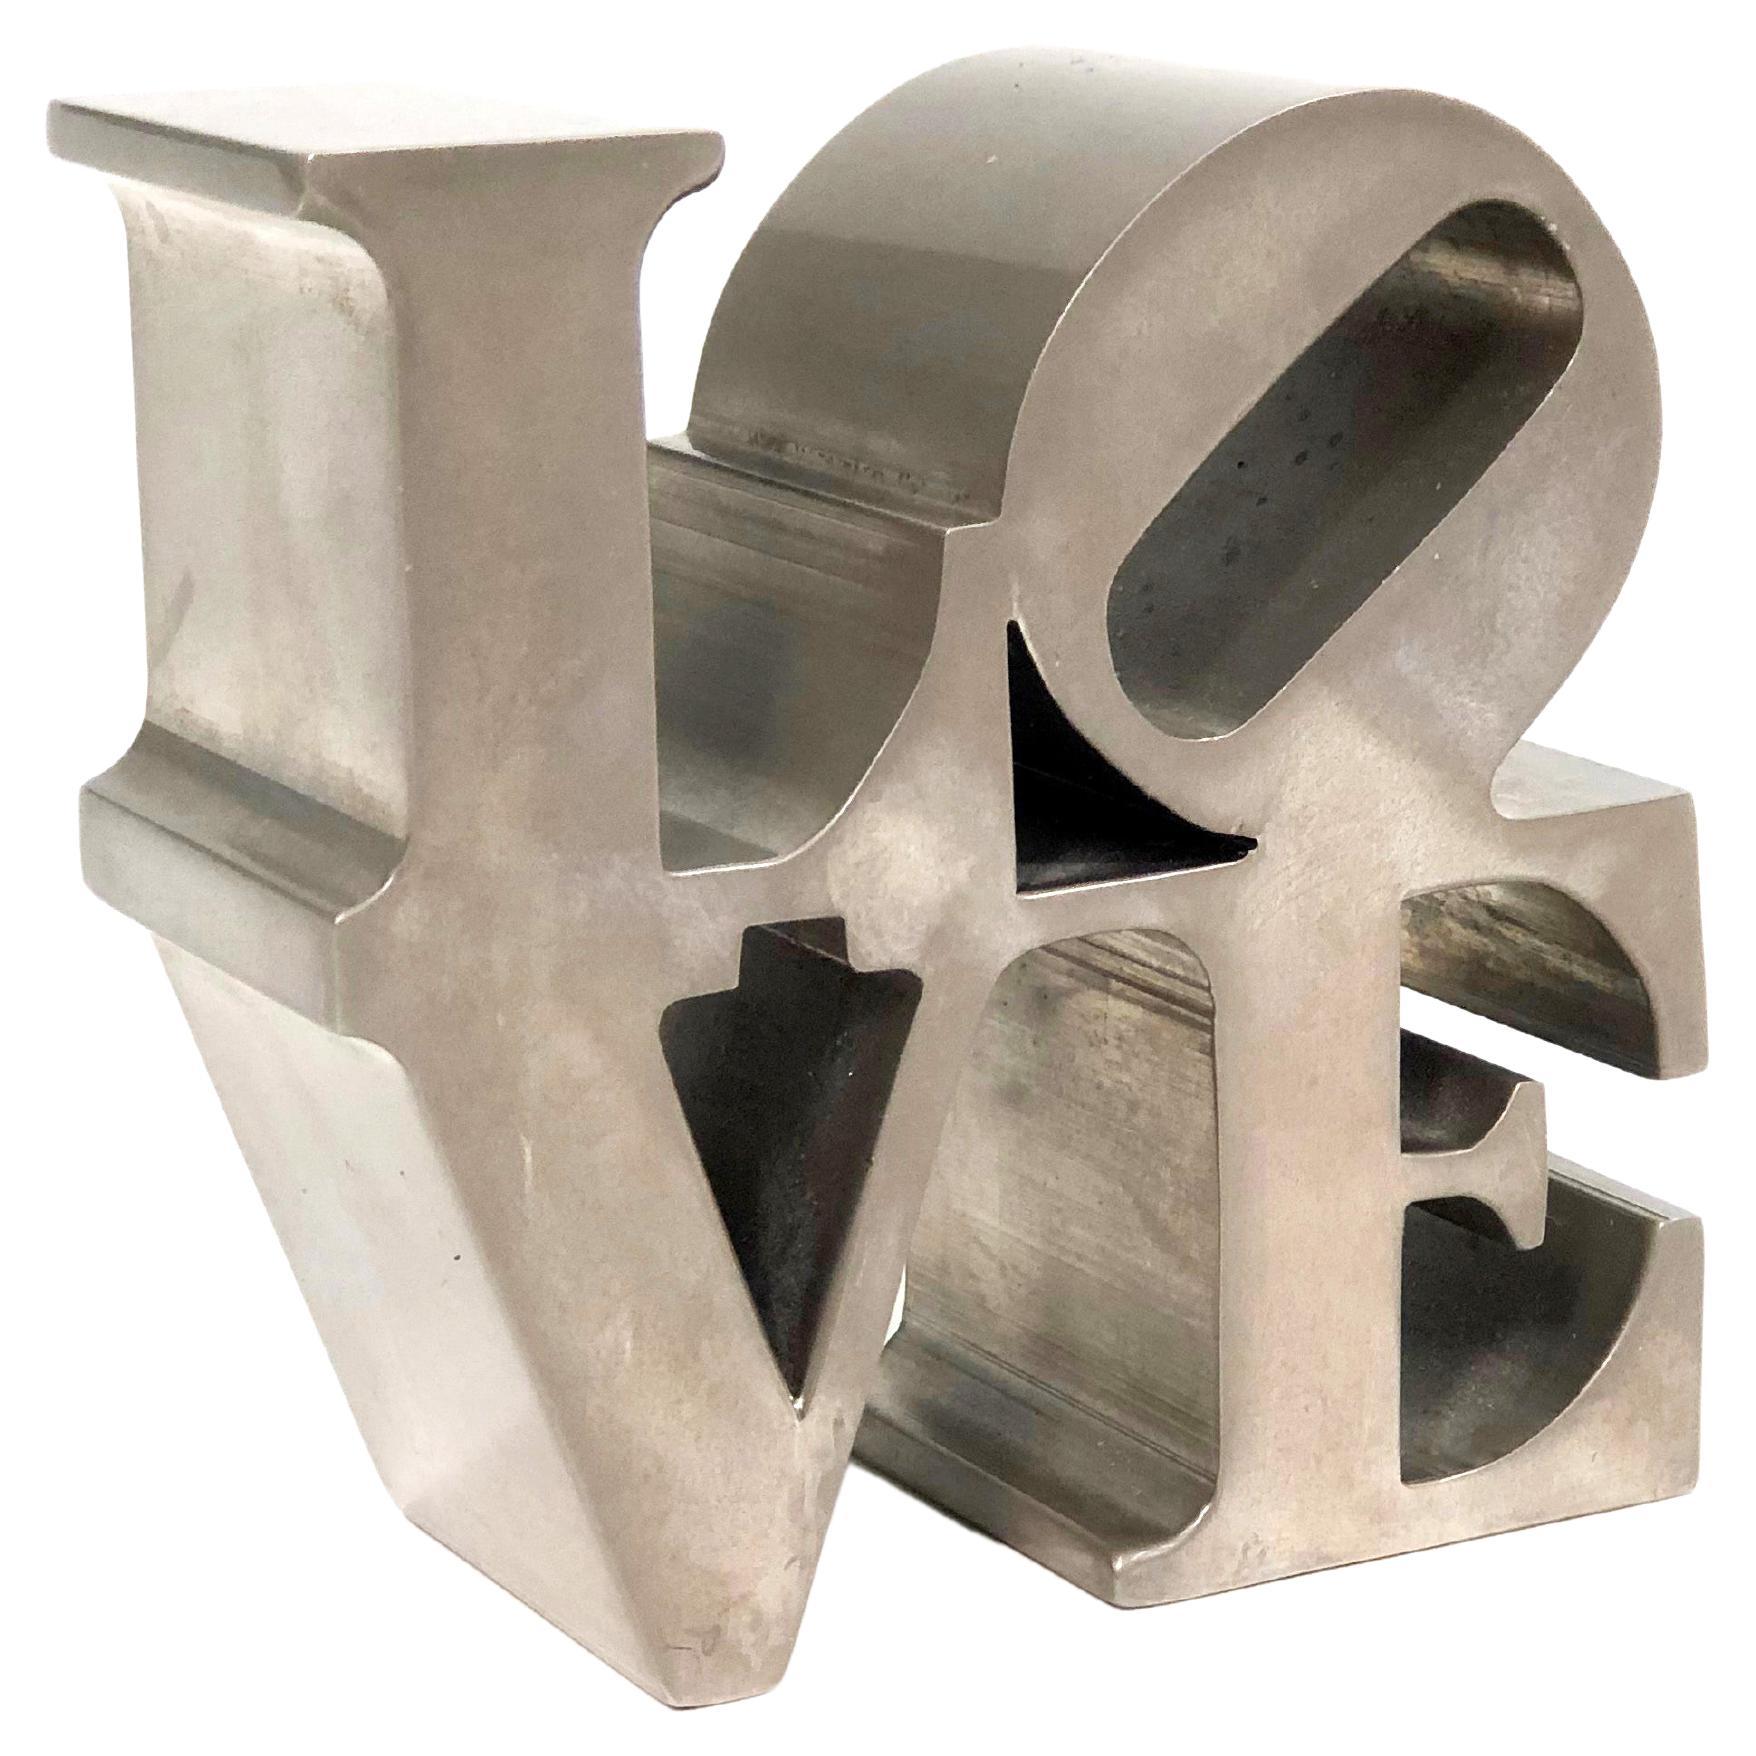 Robert Indiana "LOVE" Paperweight Sculpture